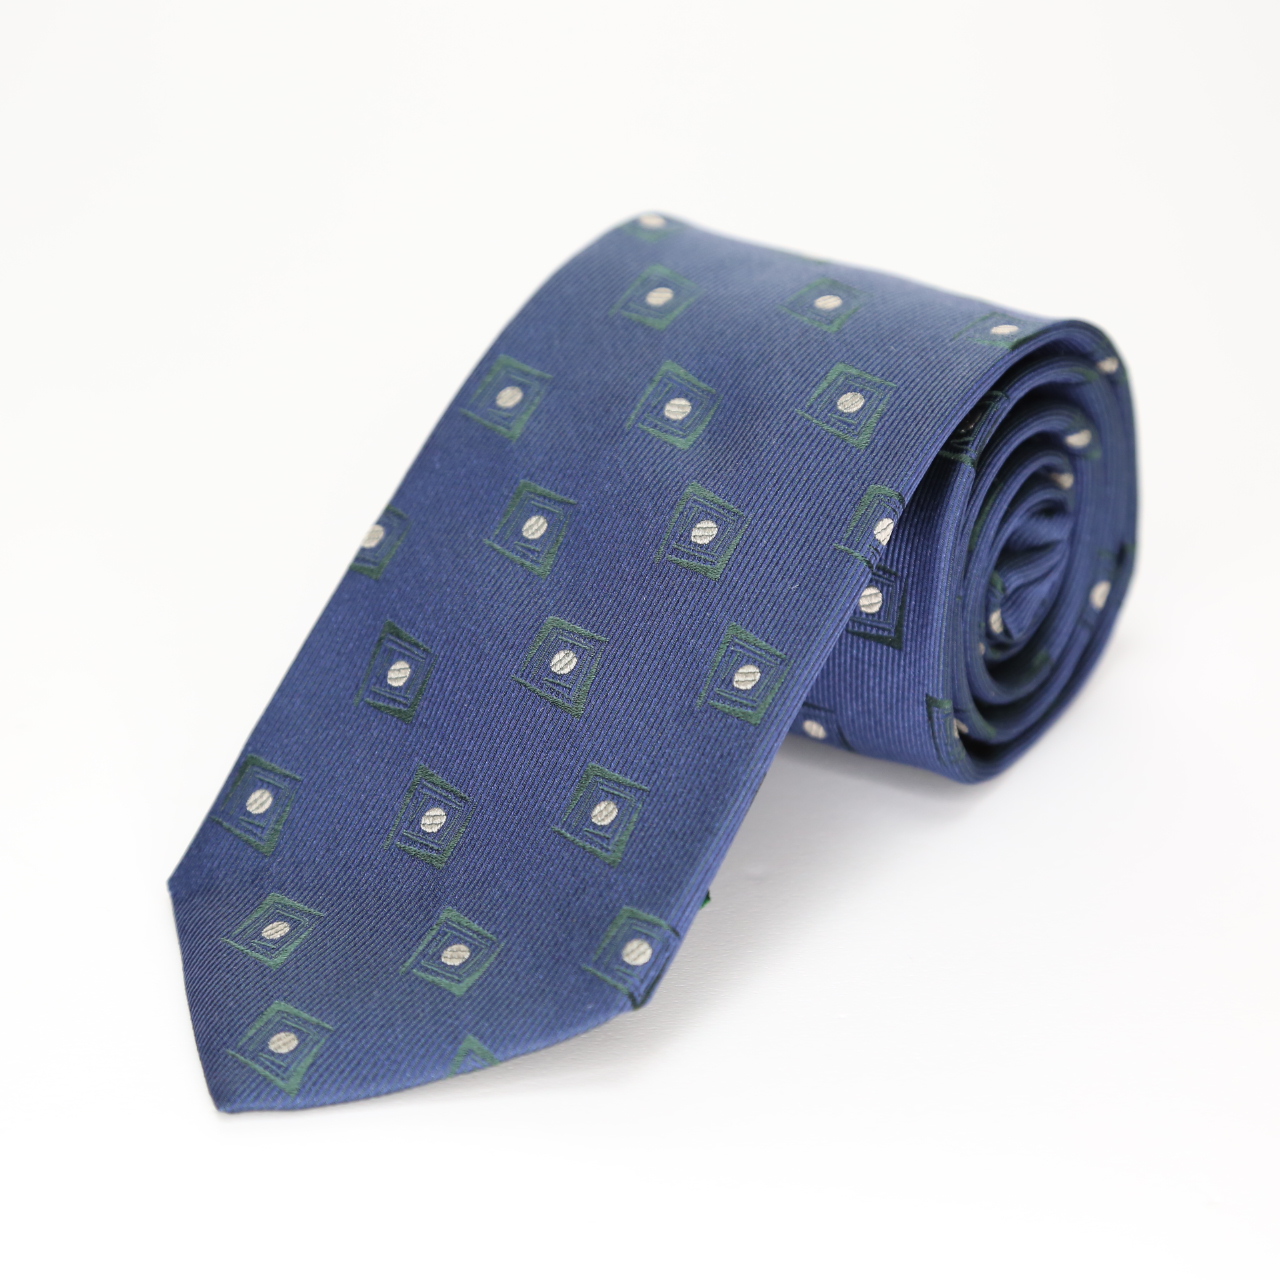 イタリア生地ネクタイ  ブルー  FATTURA  日本製  ヴィンテージ調  メンズファッション  ネクタイ  コーデ